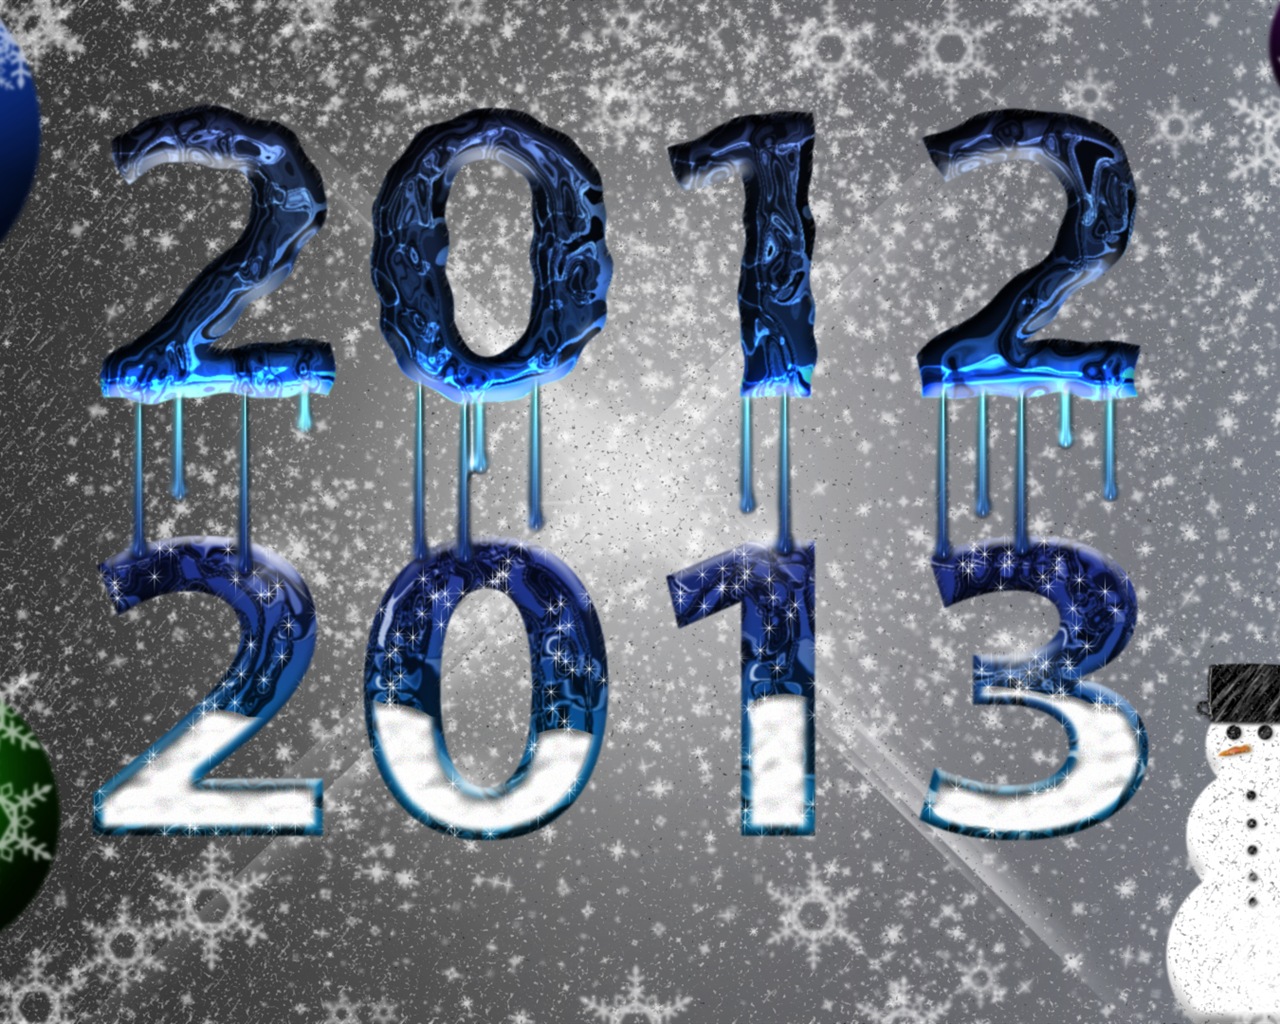 2013 Año Nuevo fondo de pantalla tema creativo (2) #3 - 1280x1024